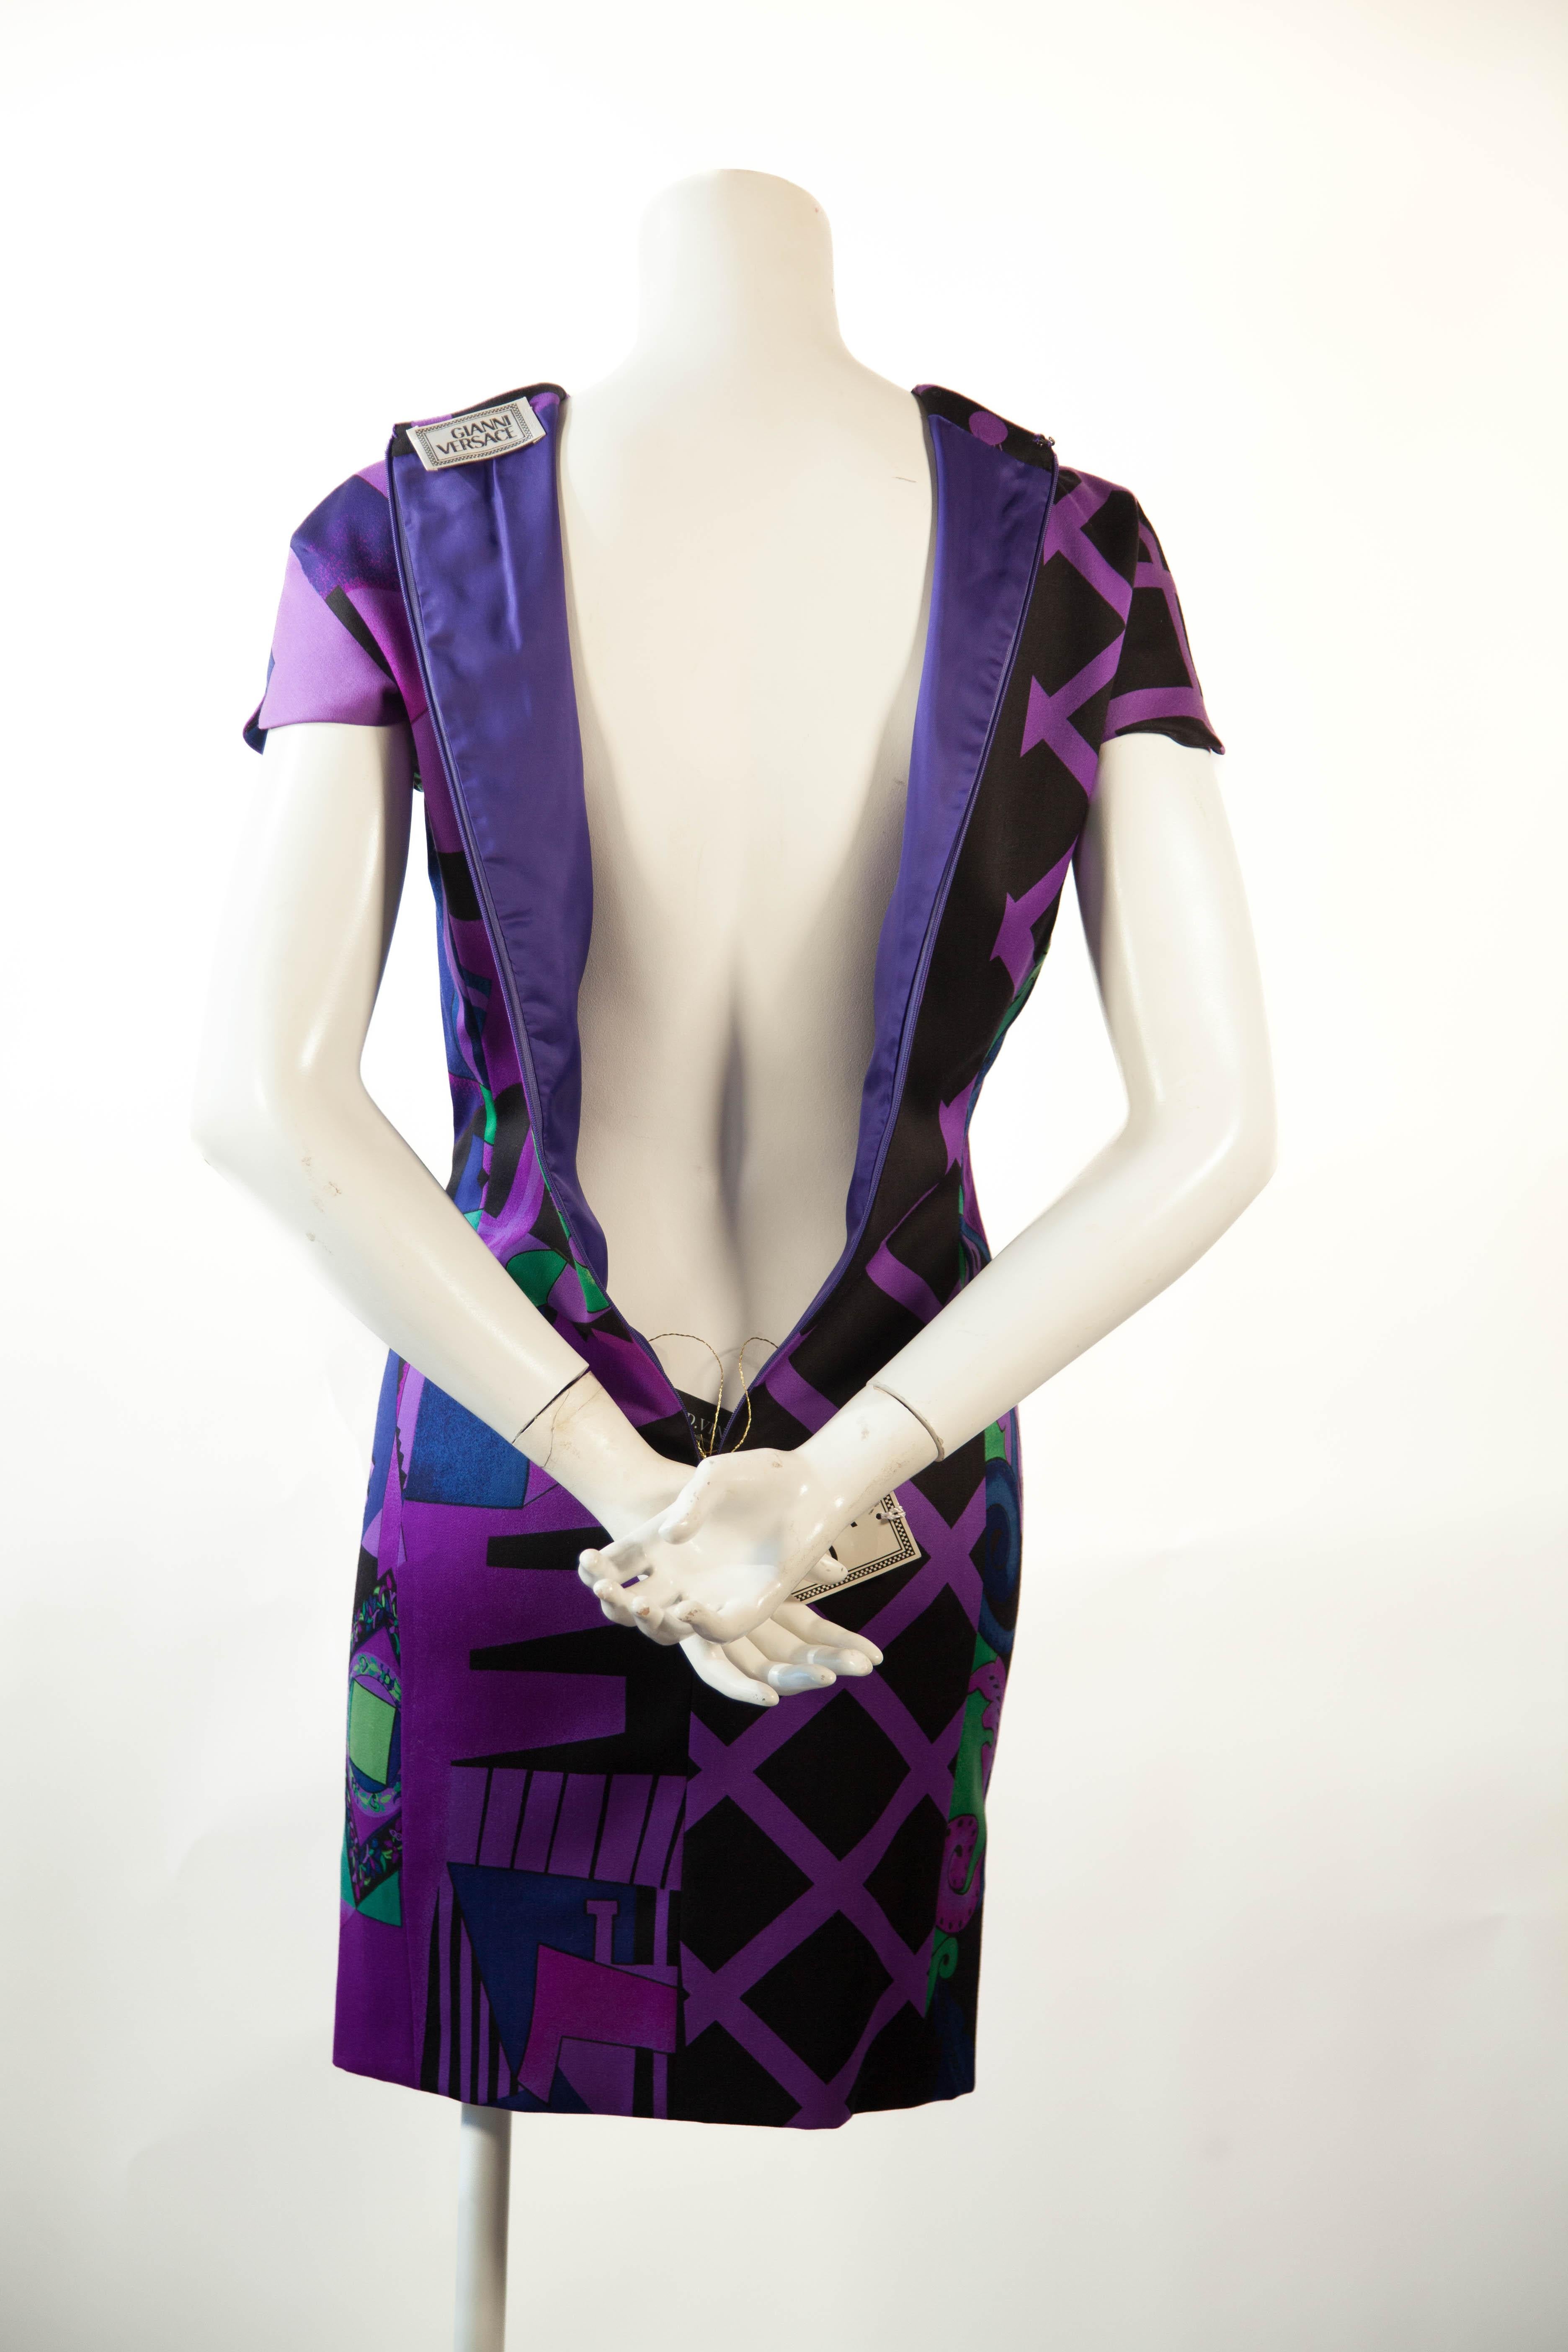 Violet Gianni Versace, robe midi en laine, violette et verte abstraite, années 1990 en vente